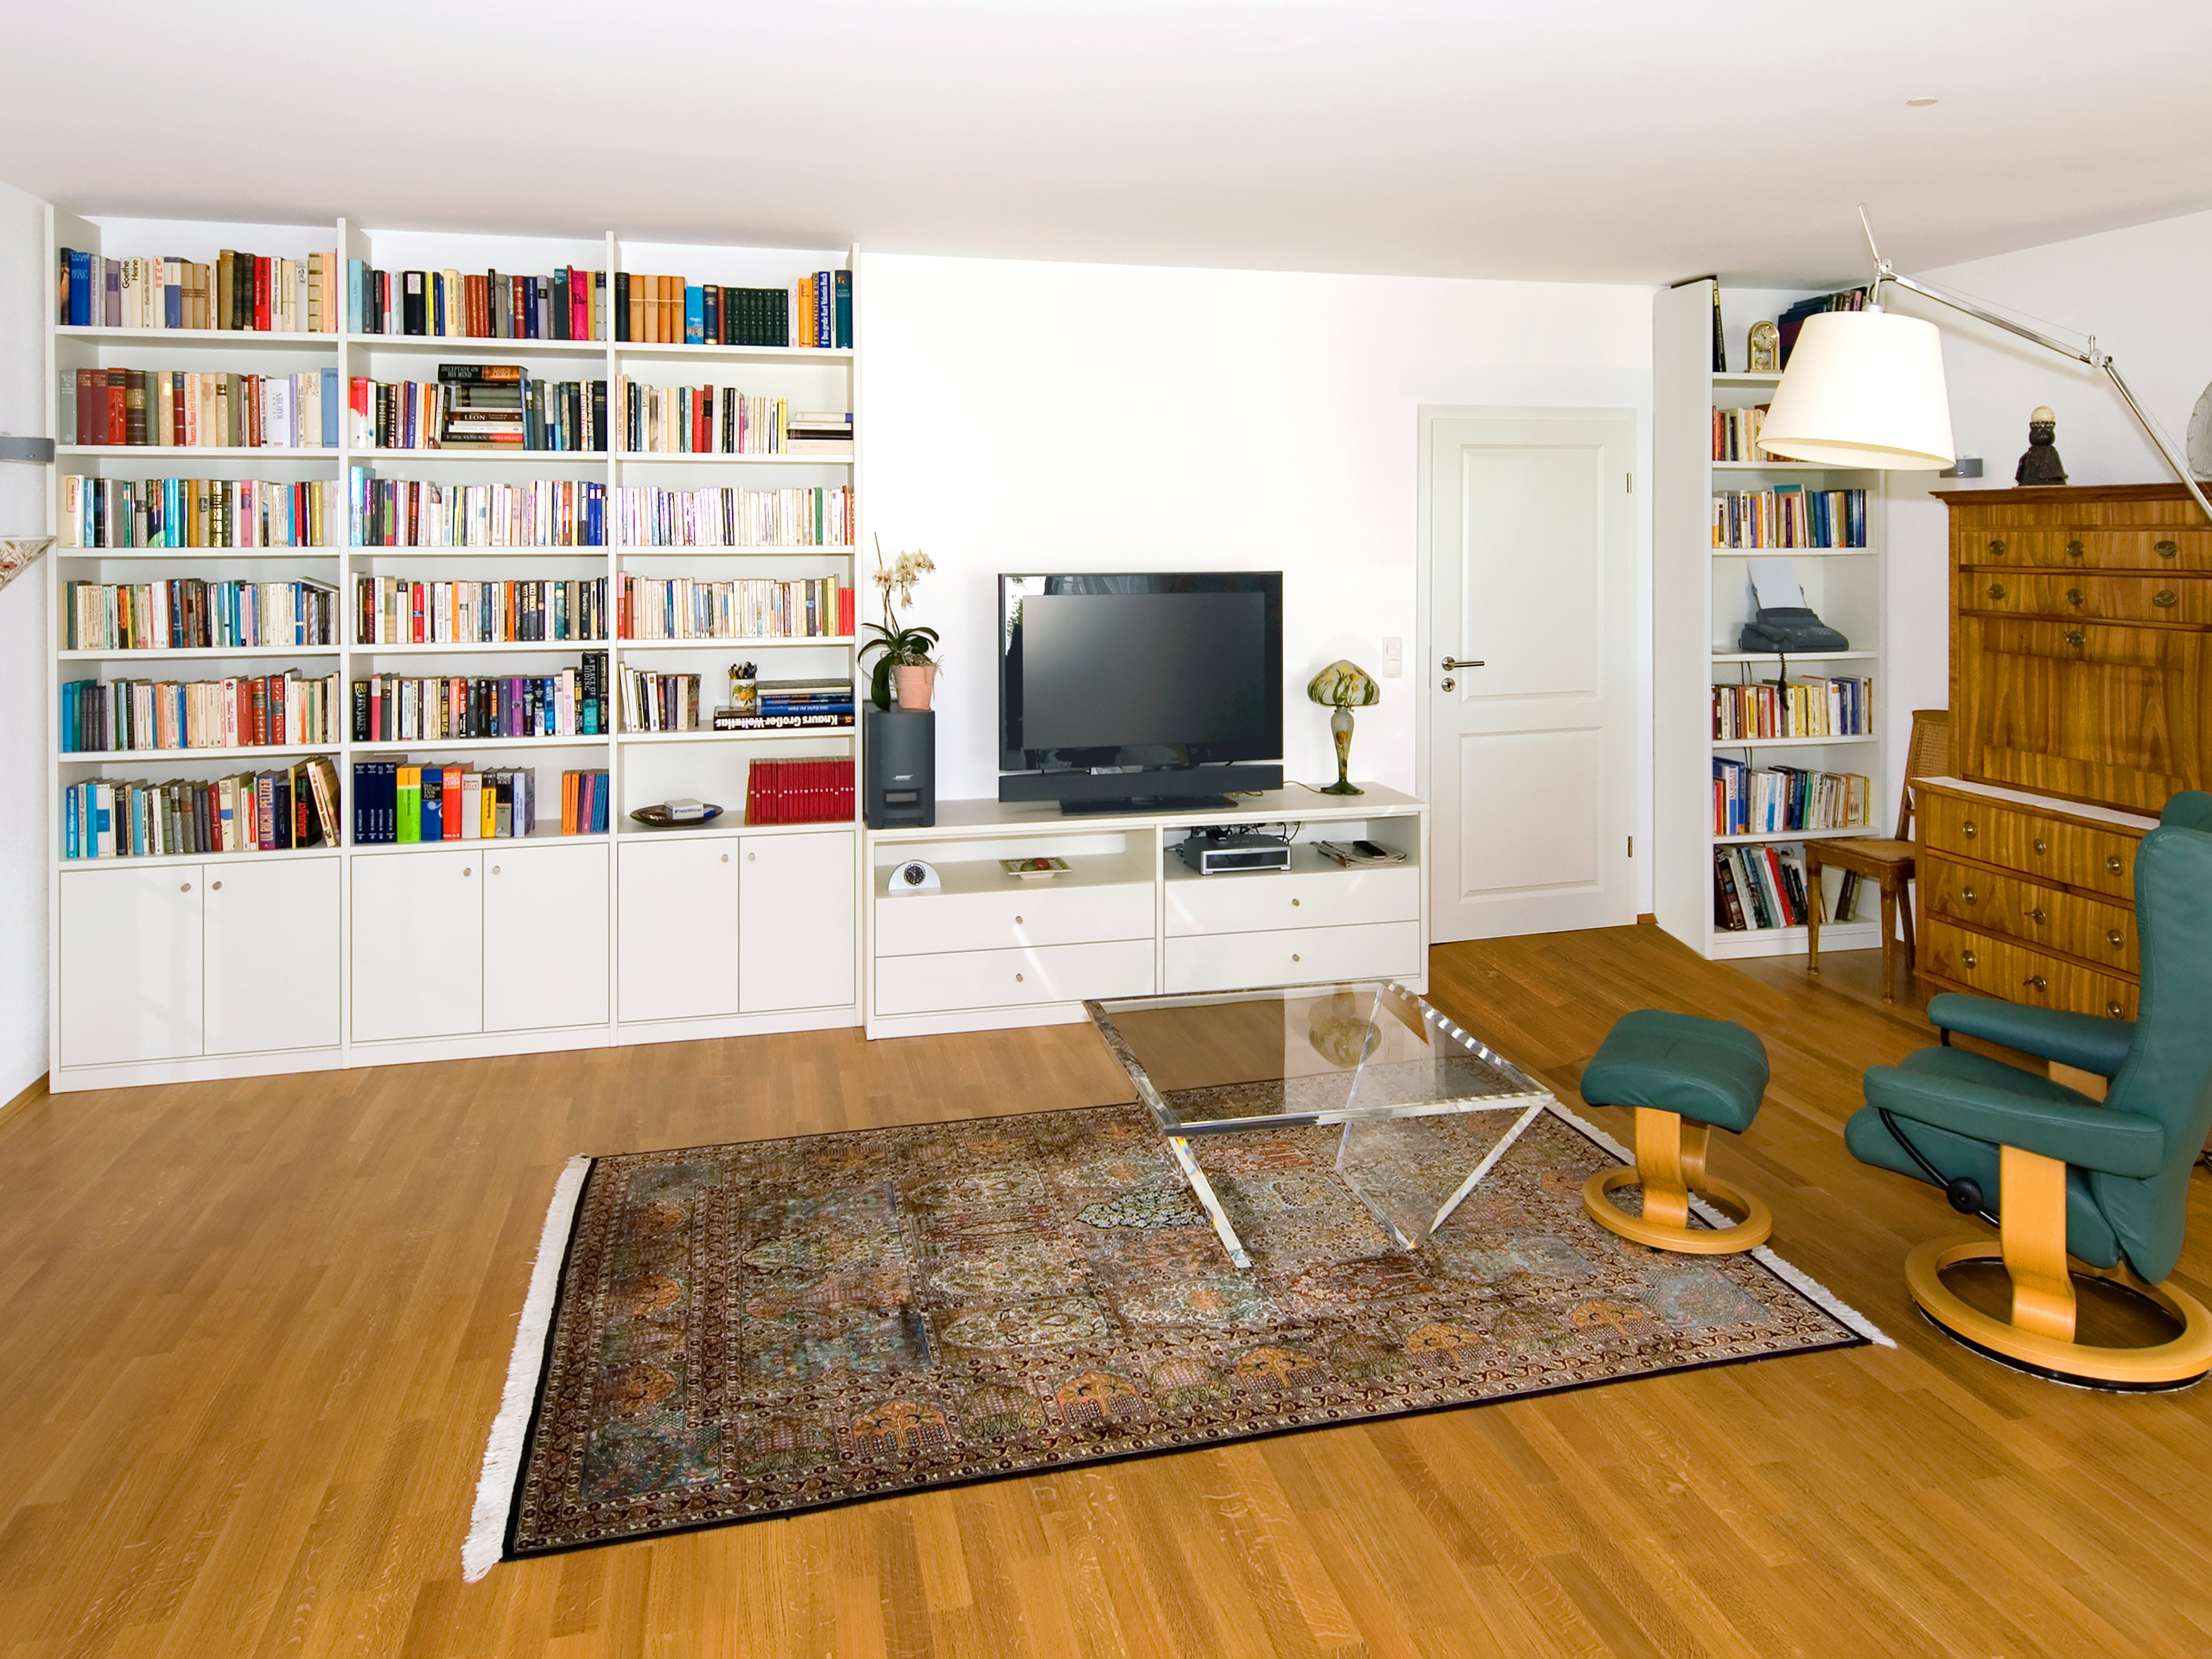 Kombination aus Medienlowboard und Bibliotheks-Regalen Panorama-Ansicht des ganzen Raums